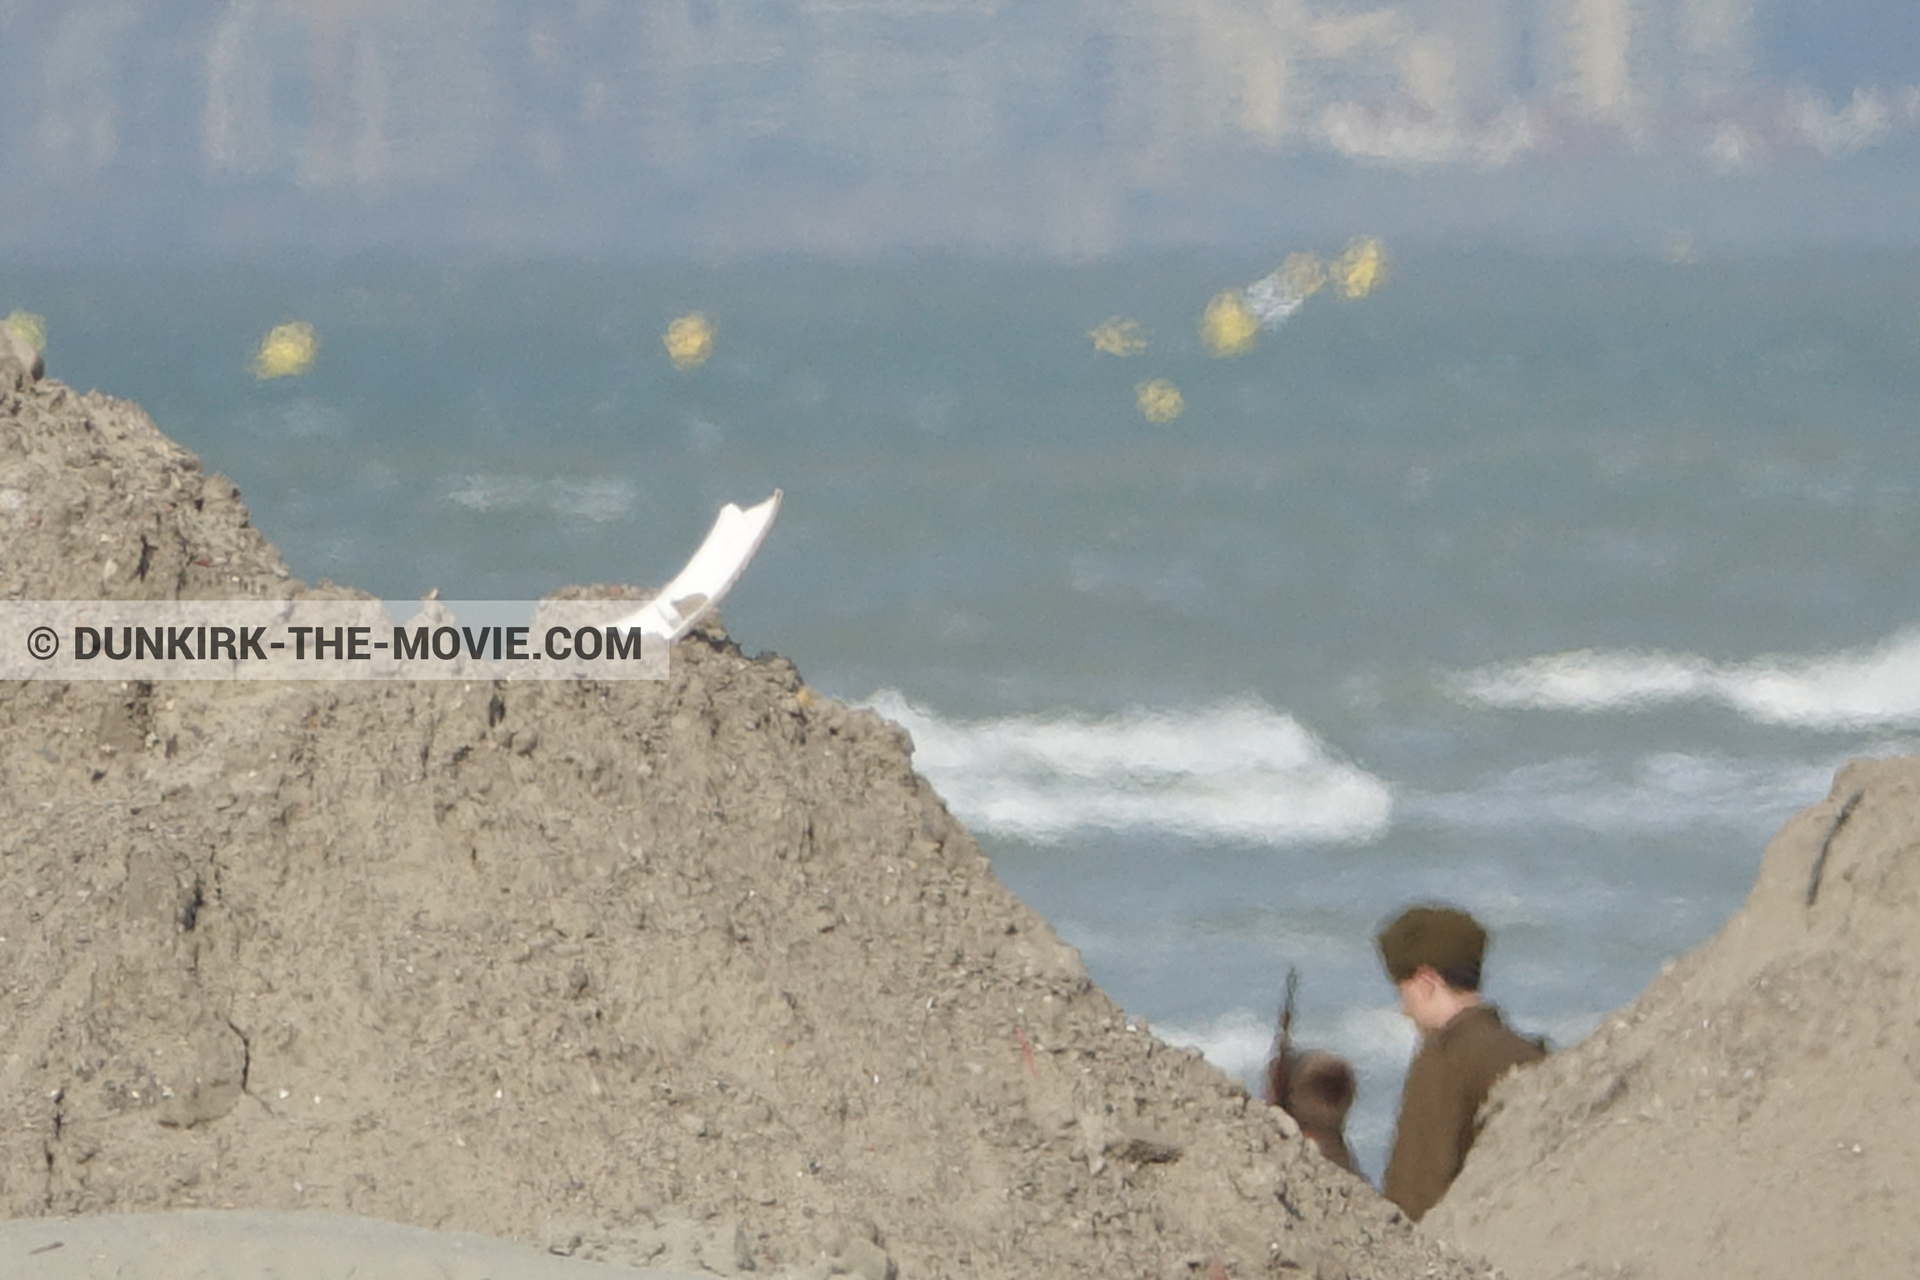 Fotos con extras, mares agitados, playa,  durante el rodaje de la película Dunkerque de Nolan